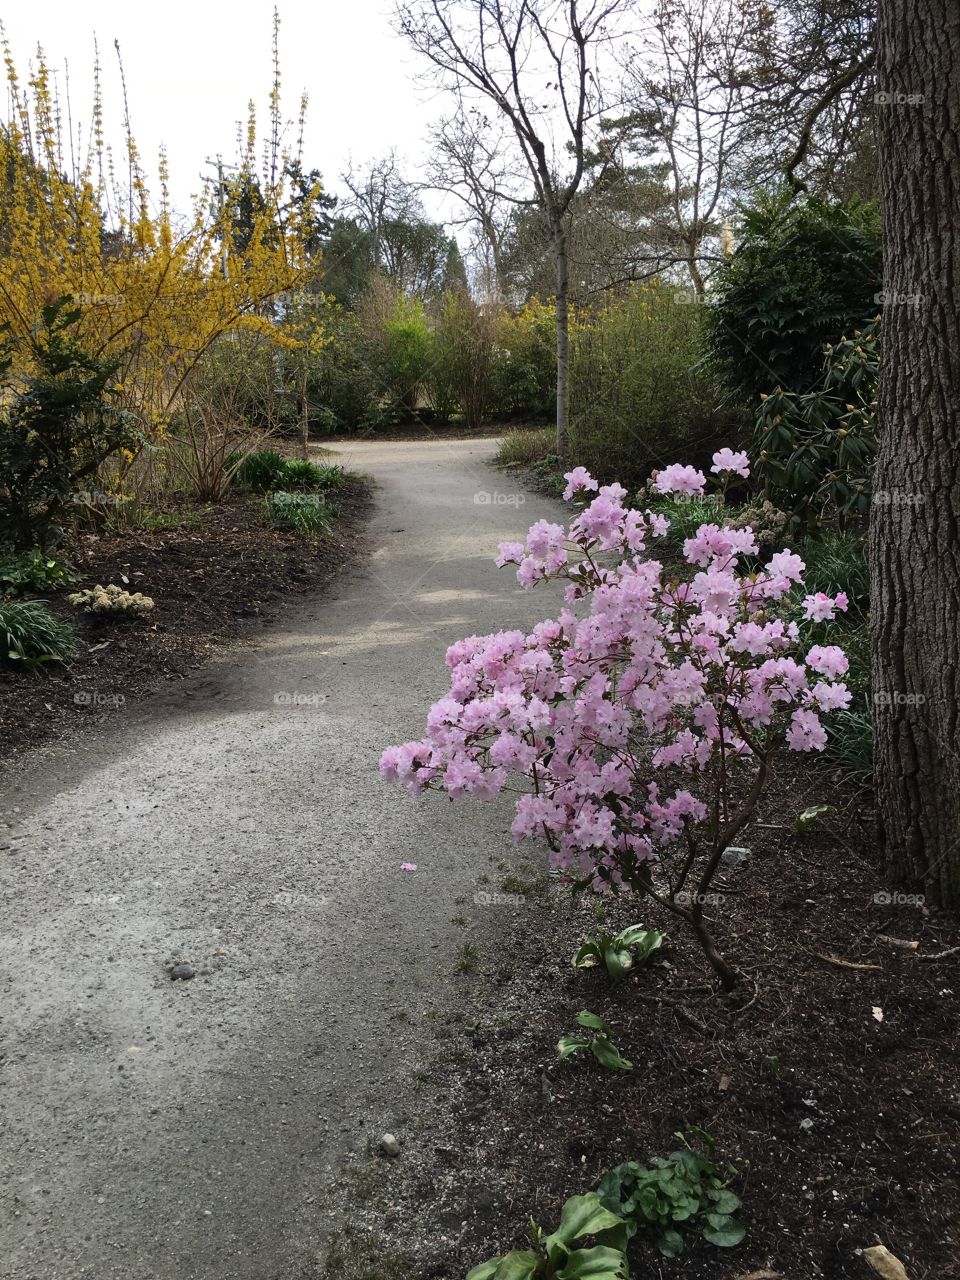 Floral path